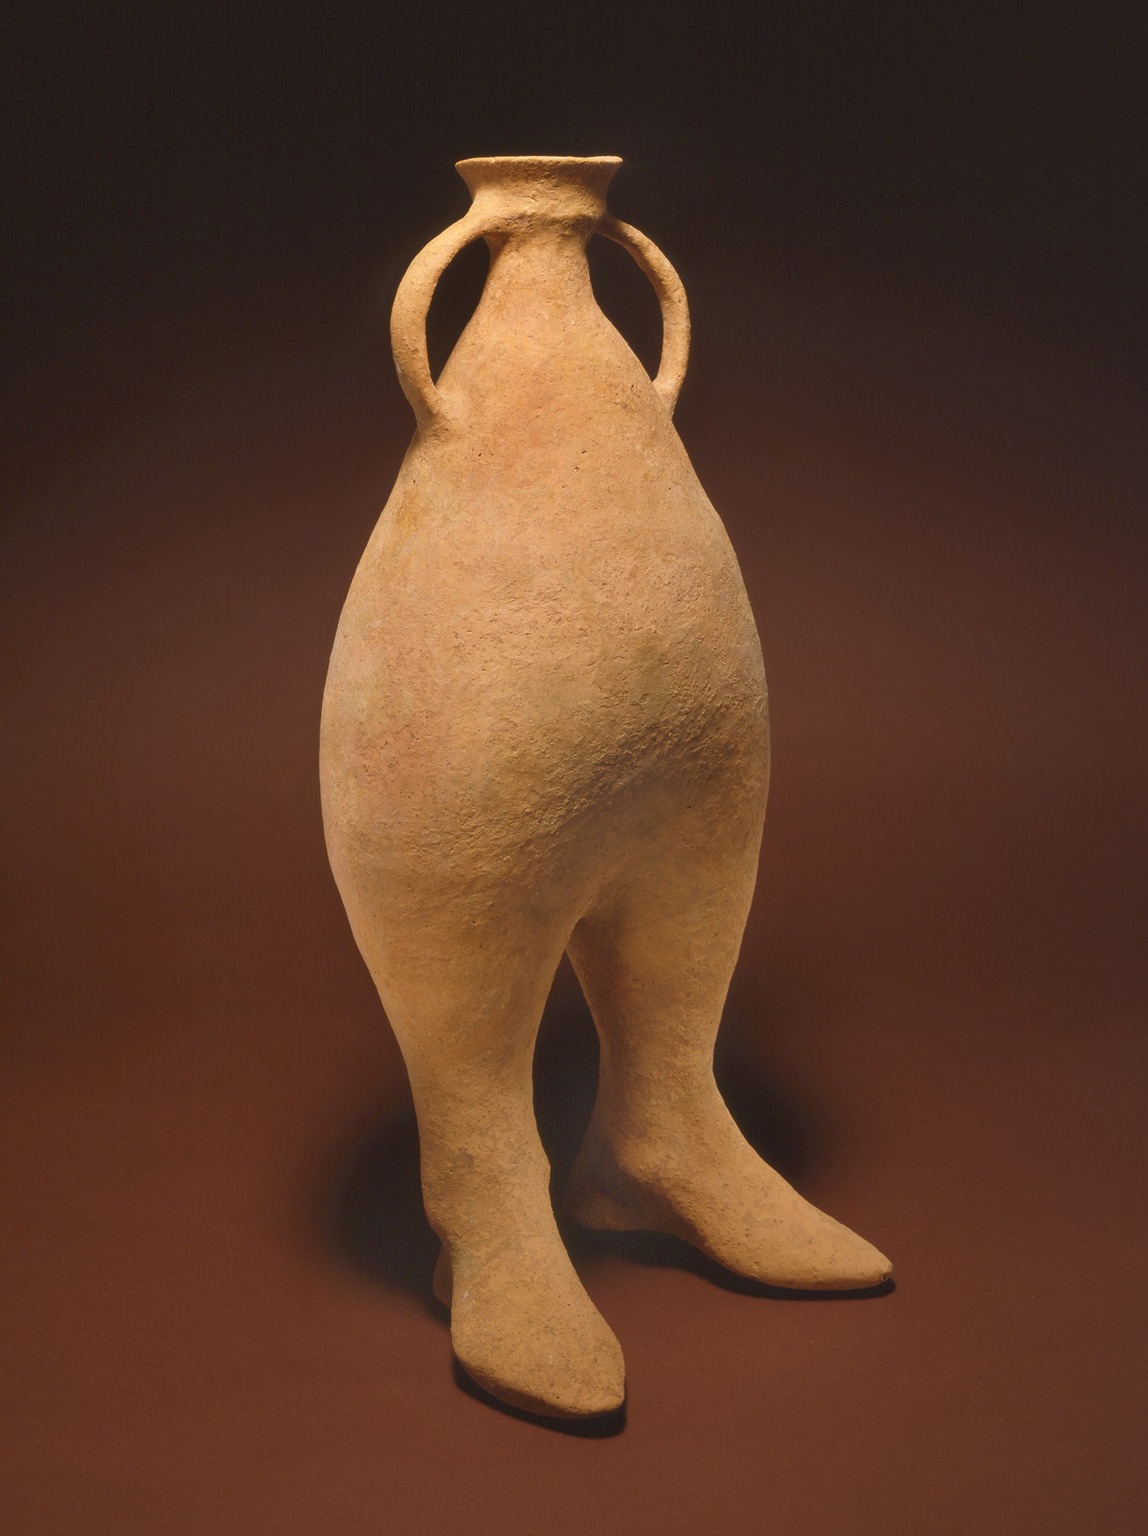 Vat met twee voeten by Onbekende Artiest - ca 1000-800 v. Chr. - 48 x 19,5 cm 